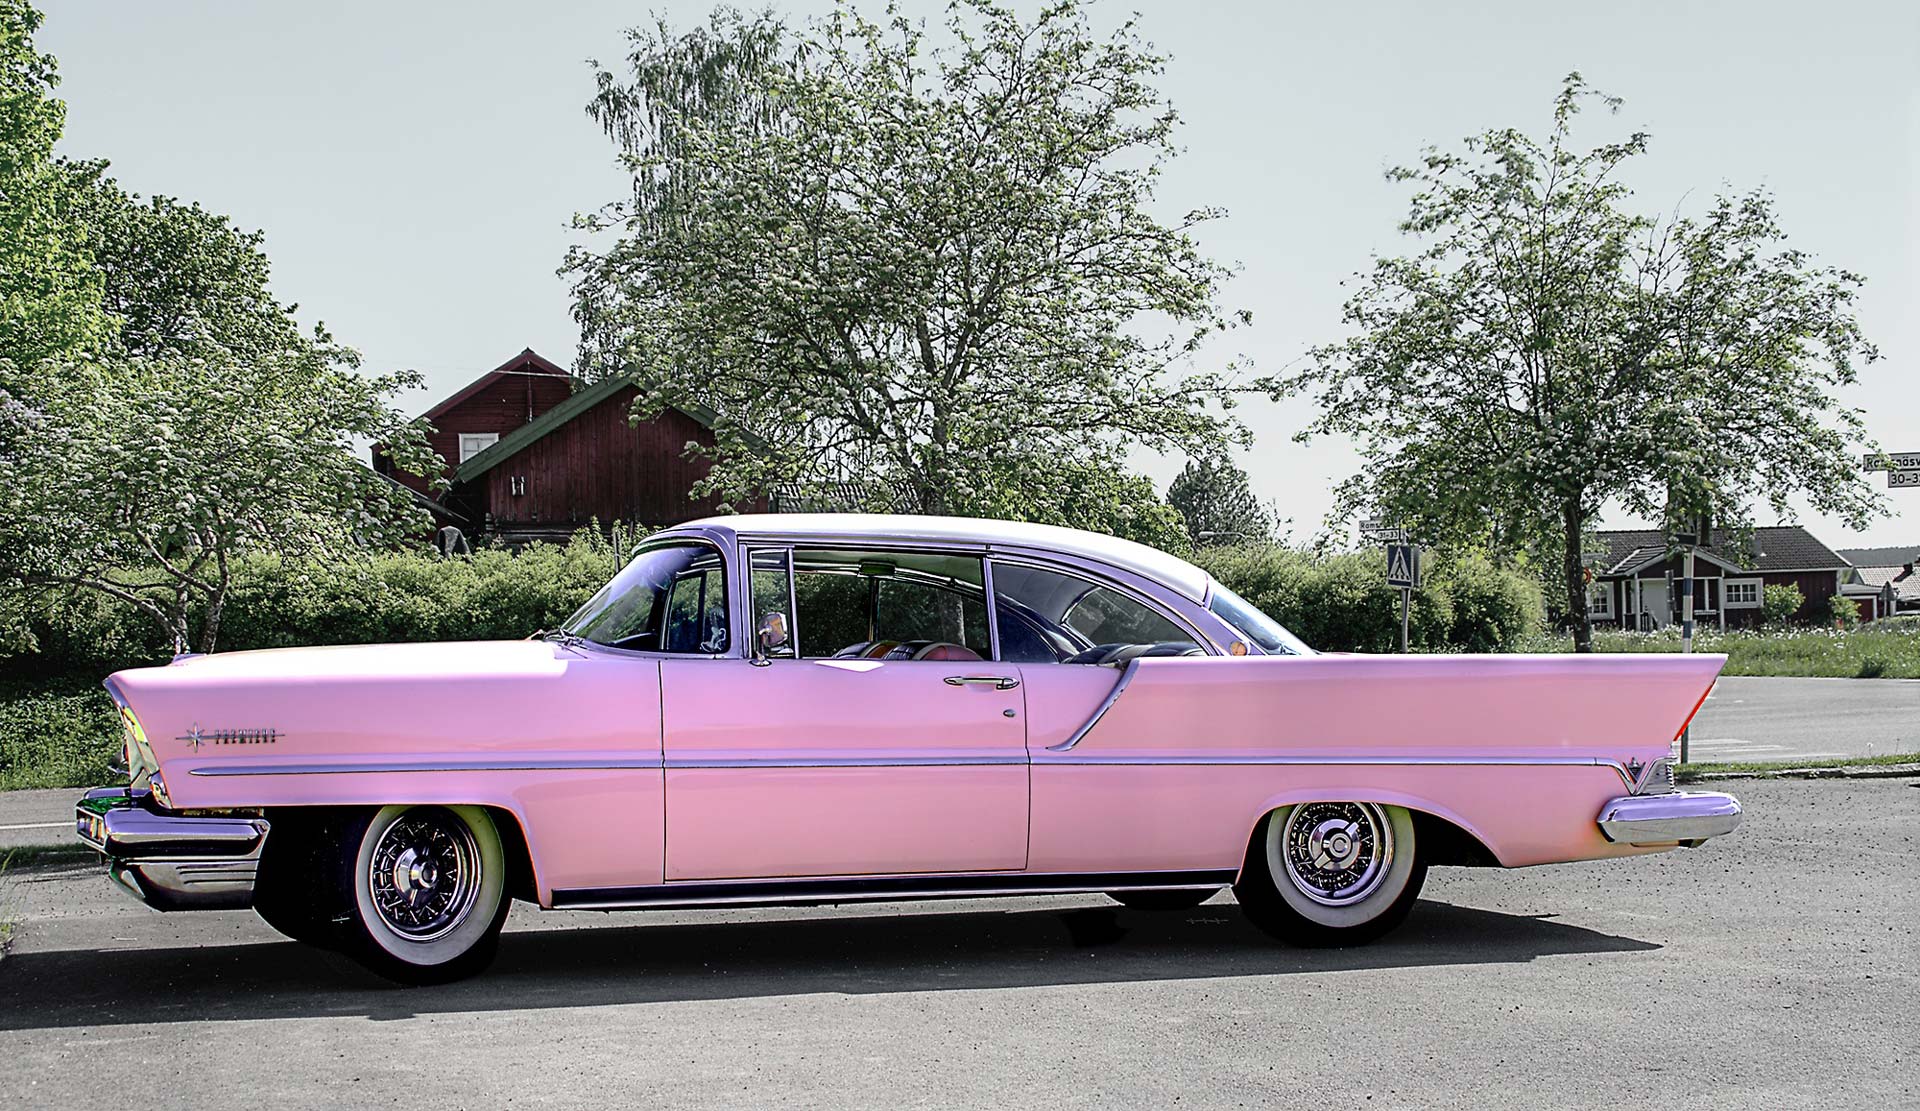 Pink Cadillac Day